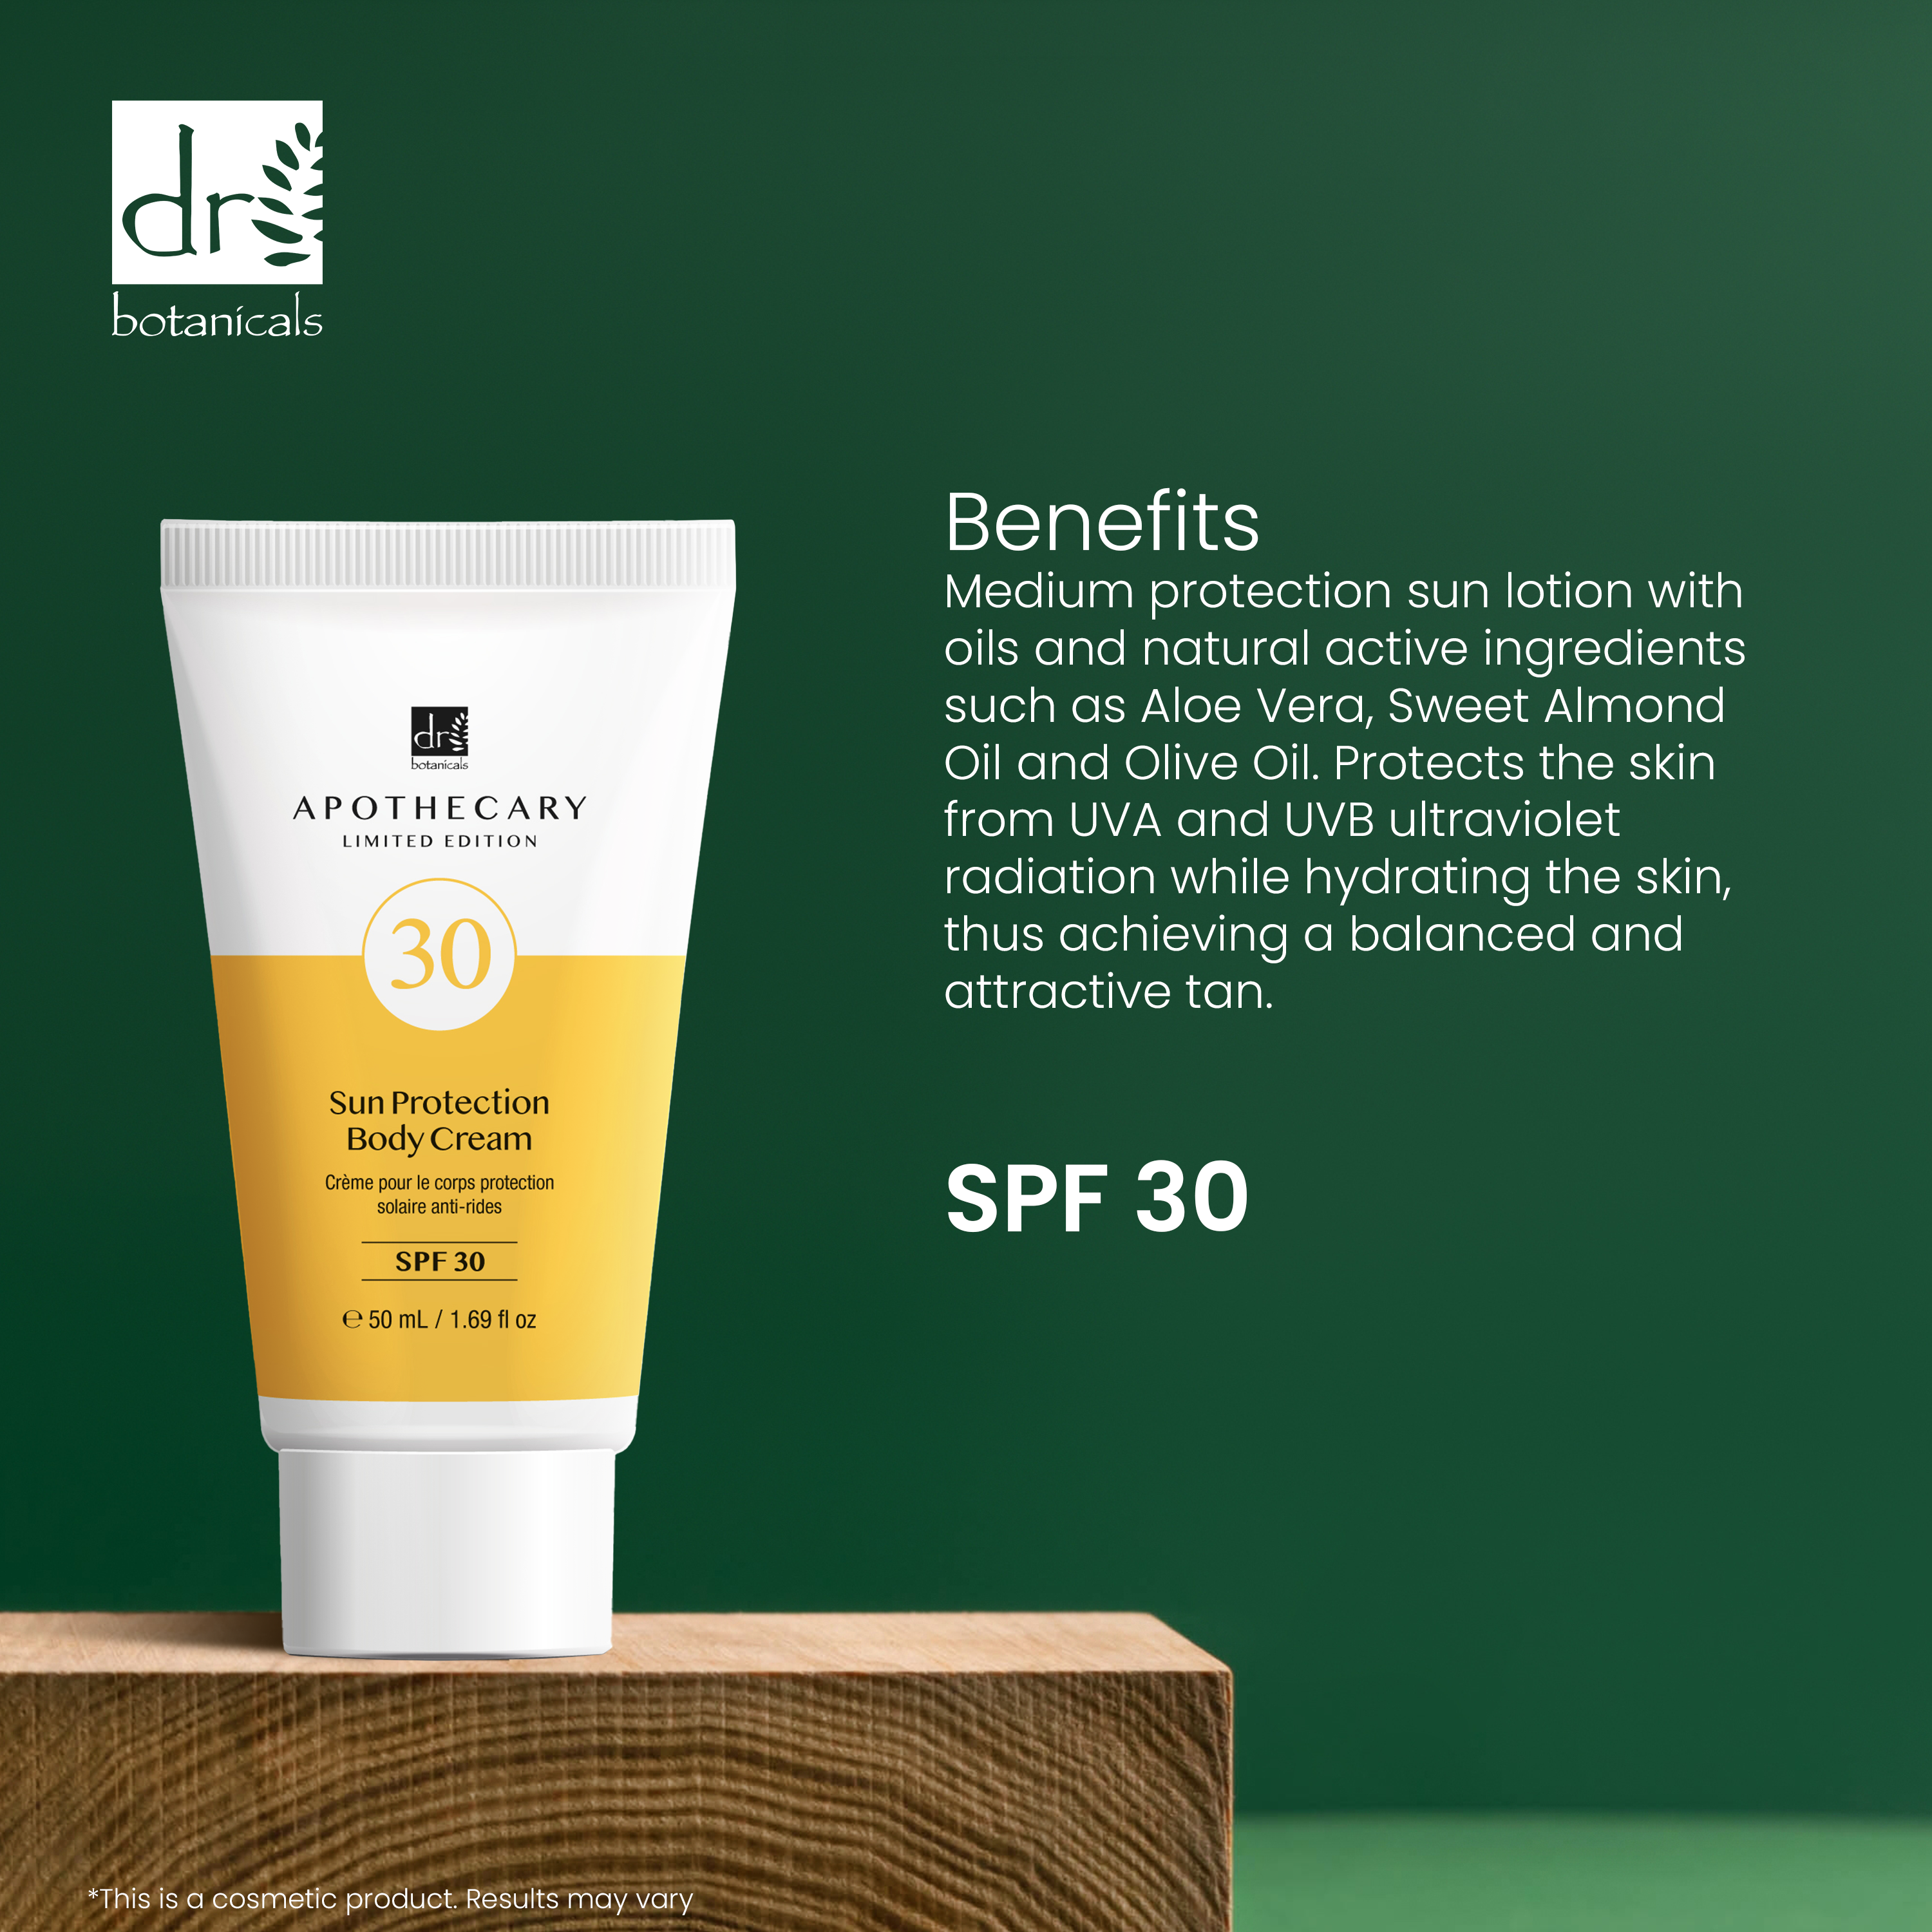 Sun Protection Body Cream SPF 30 50ml